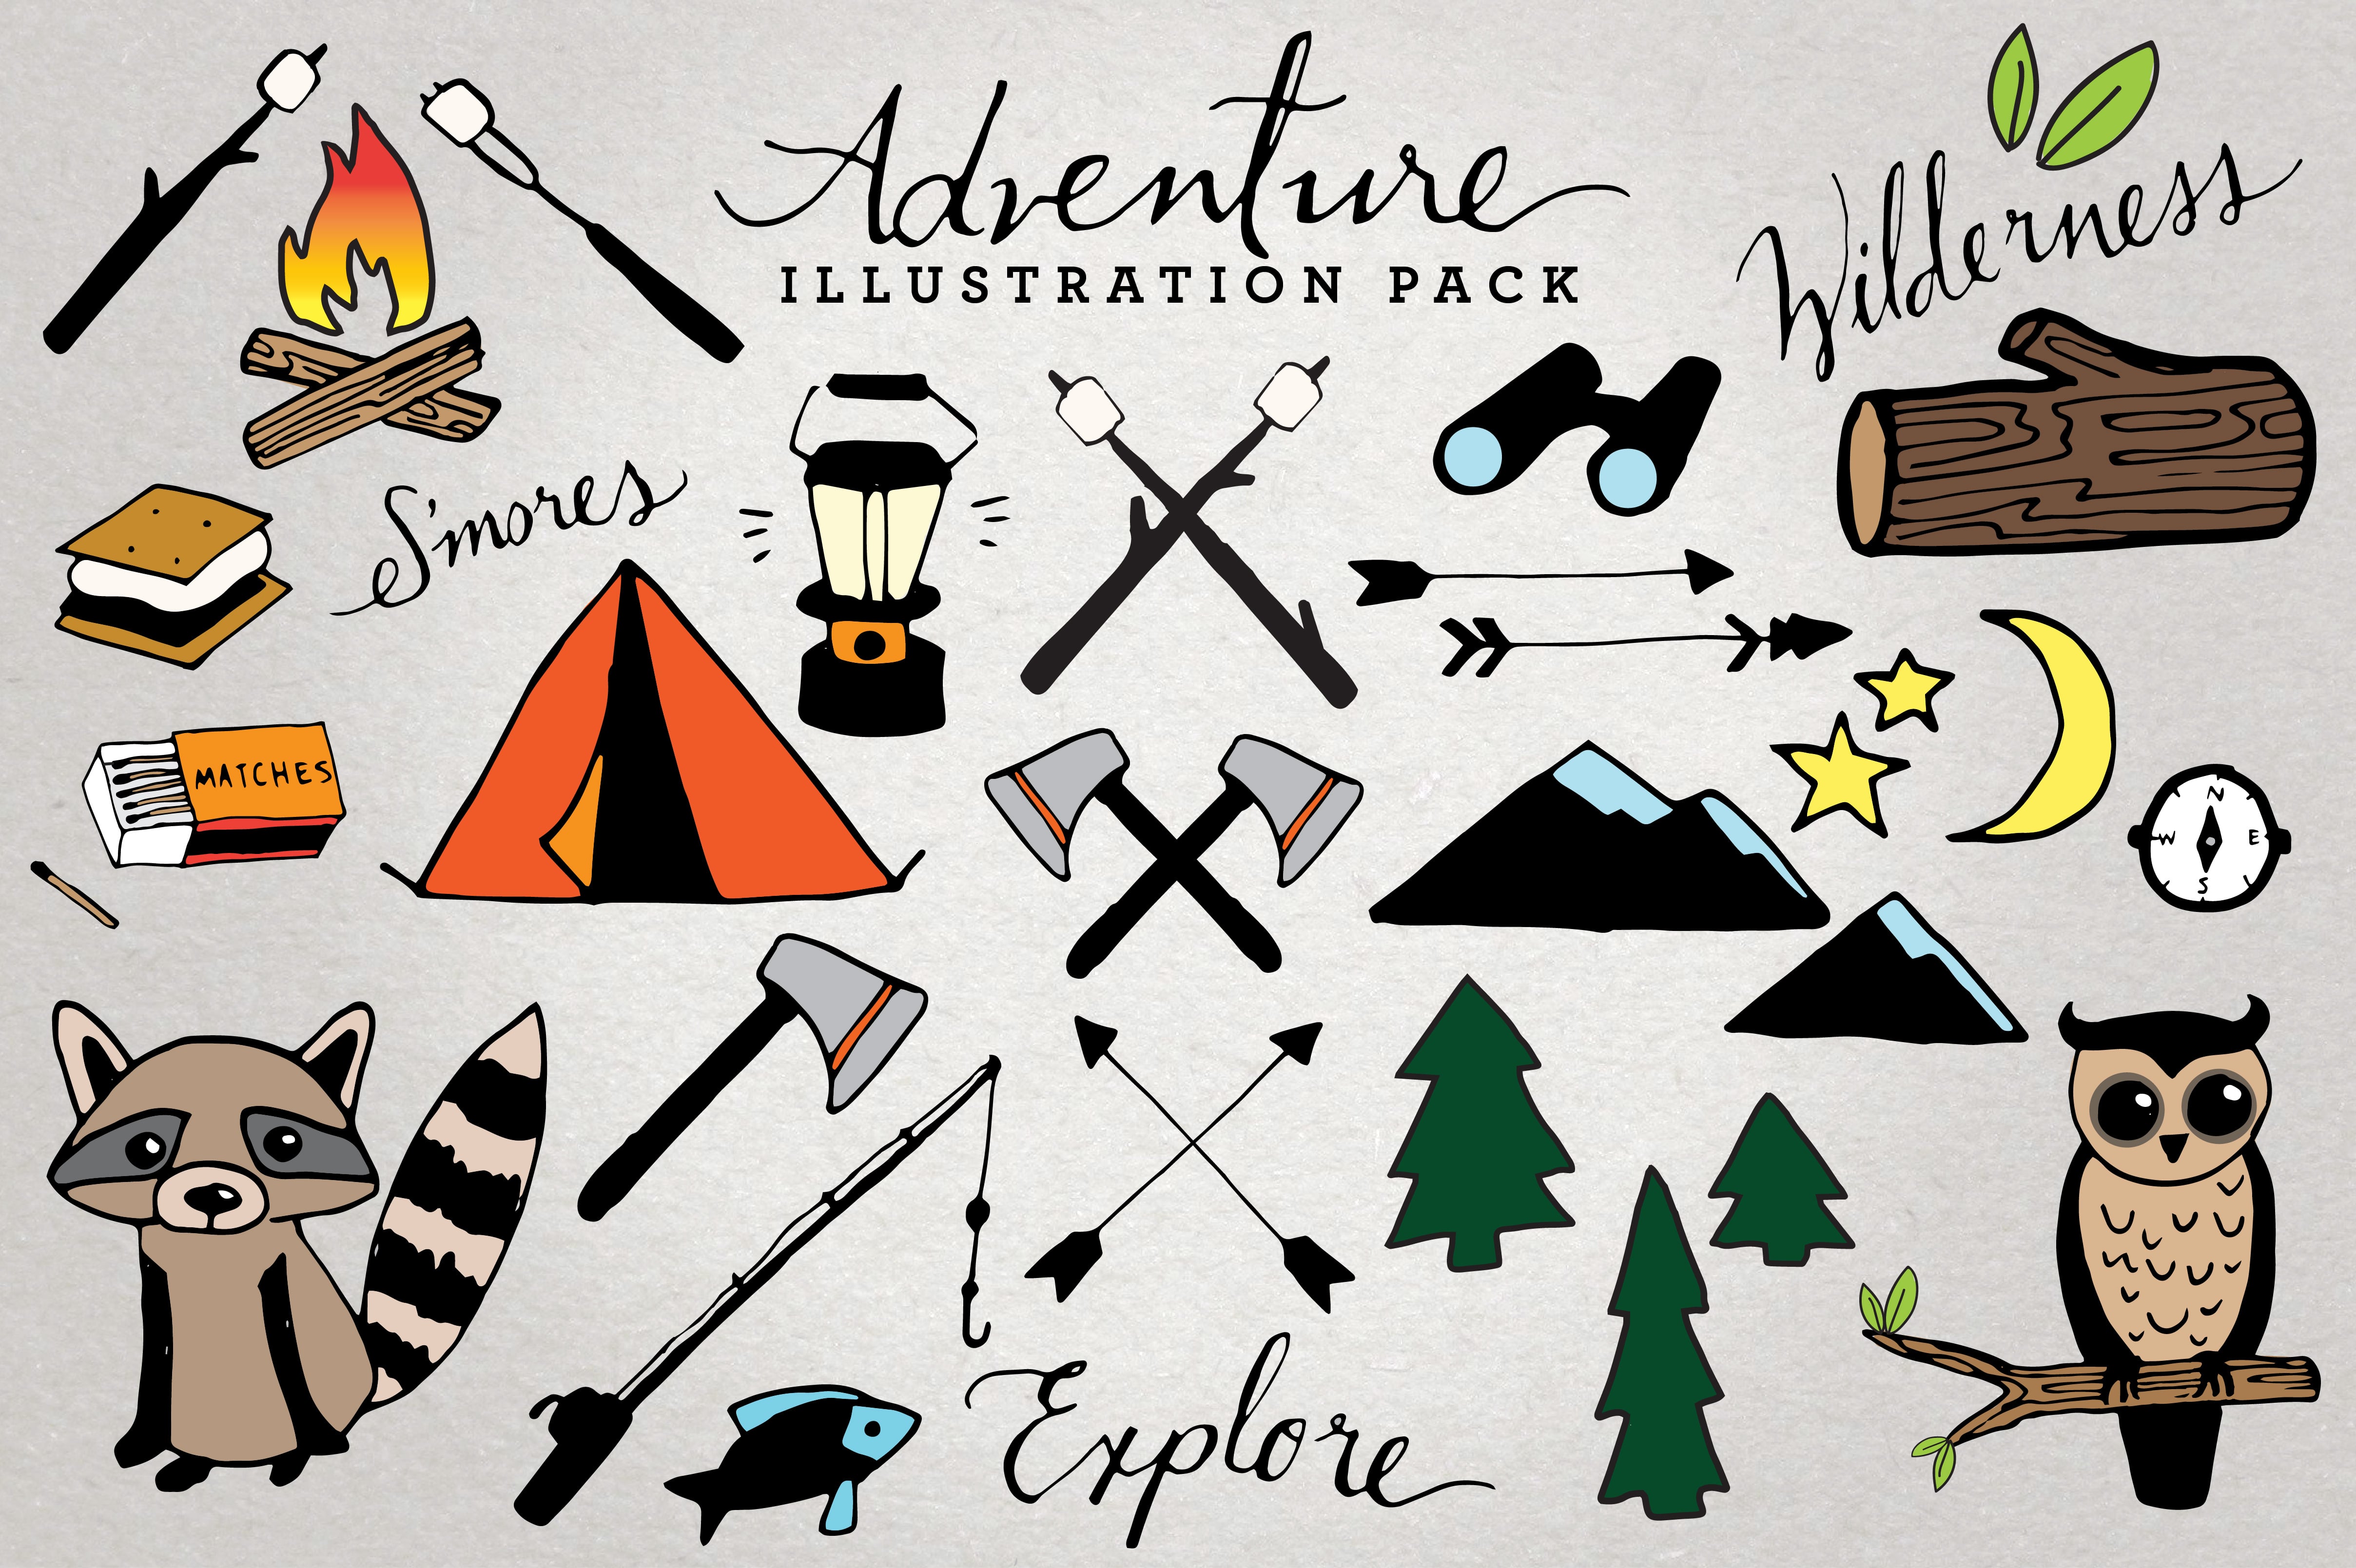 A collection for describing outdoor adventures.